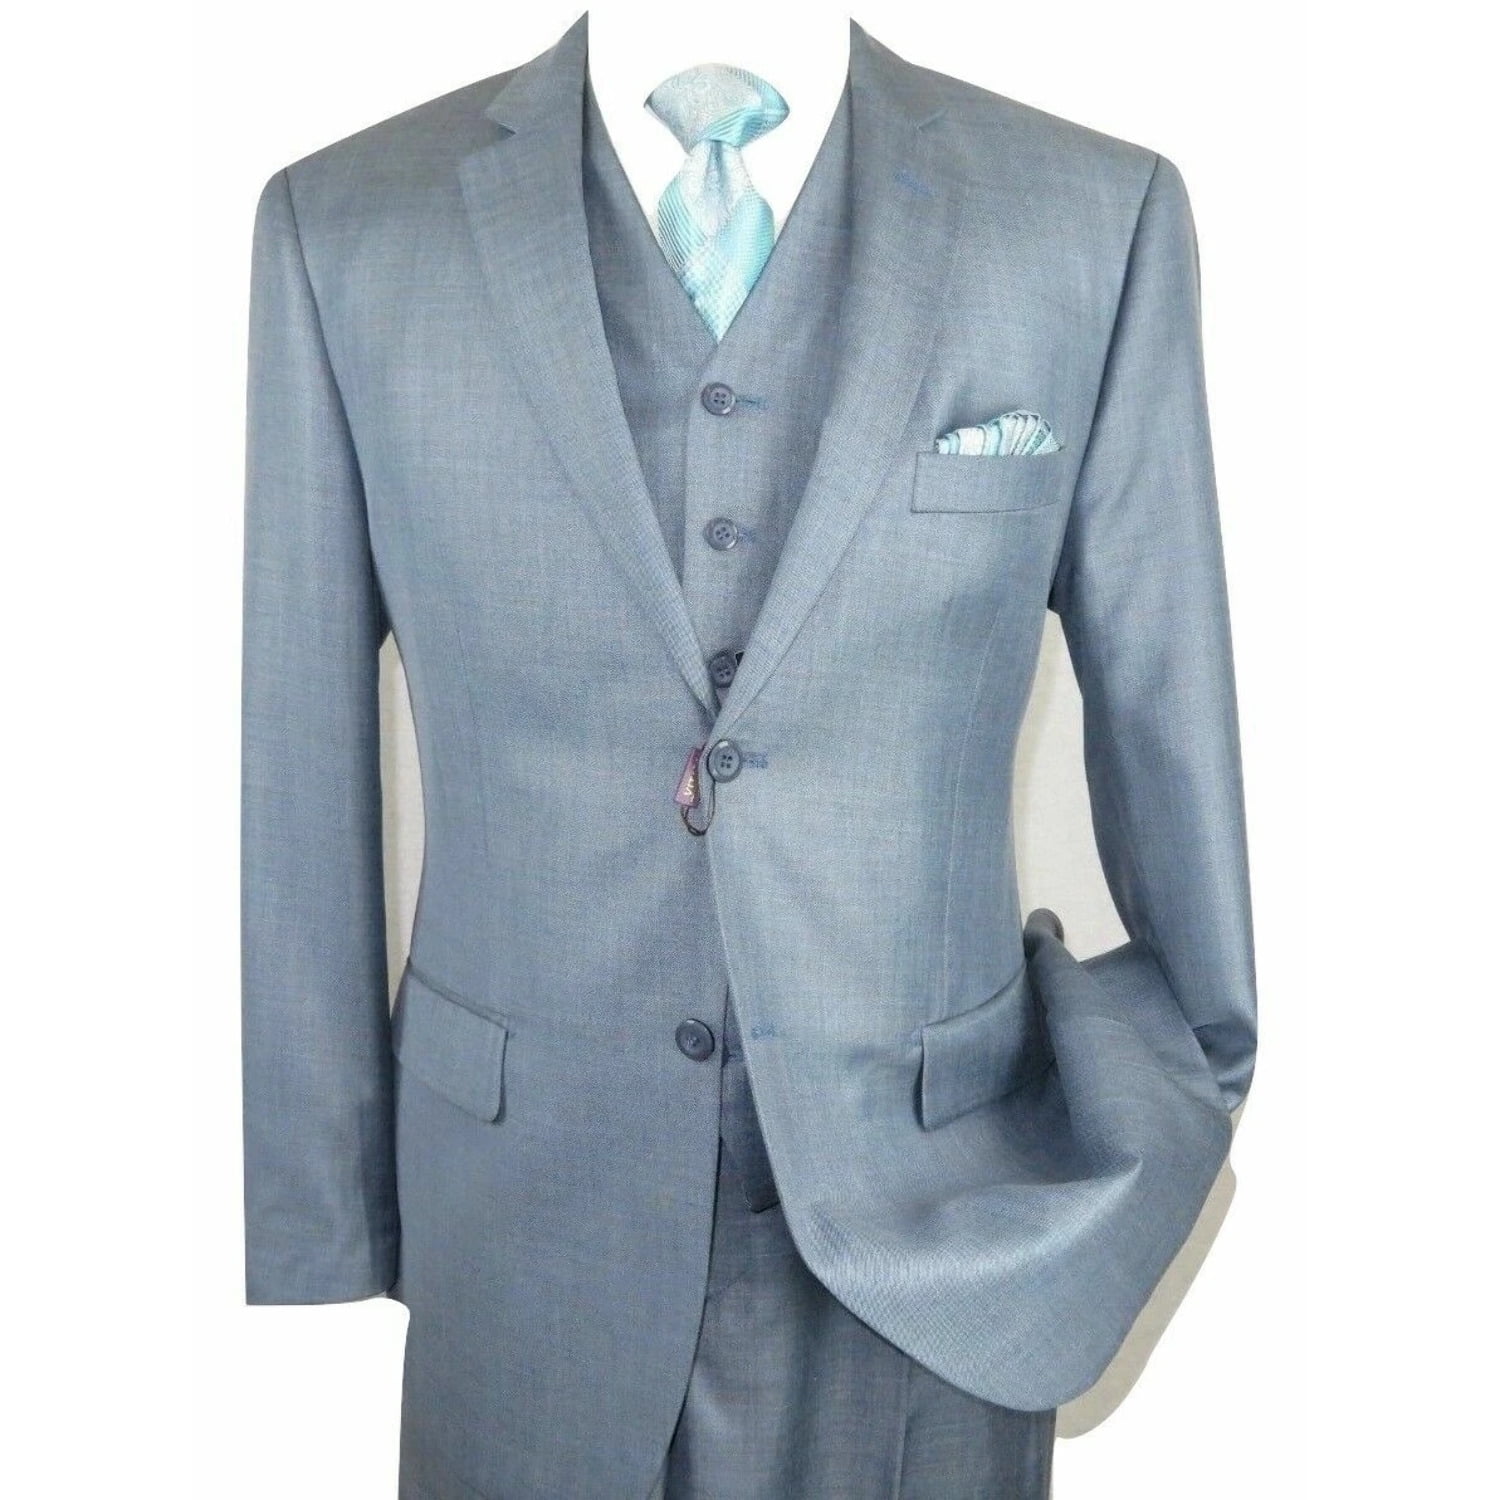 Men's Shark-skin Fashion Suit 3 button Edge Notch Lapel Jacket with Vest&Pants 